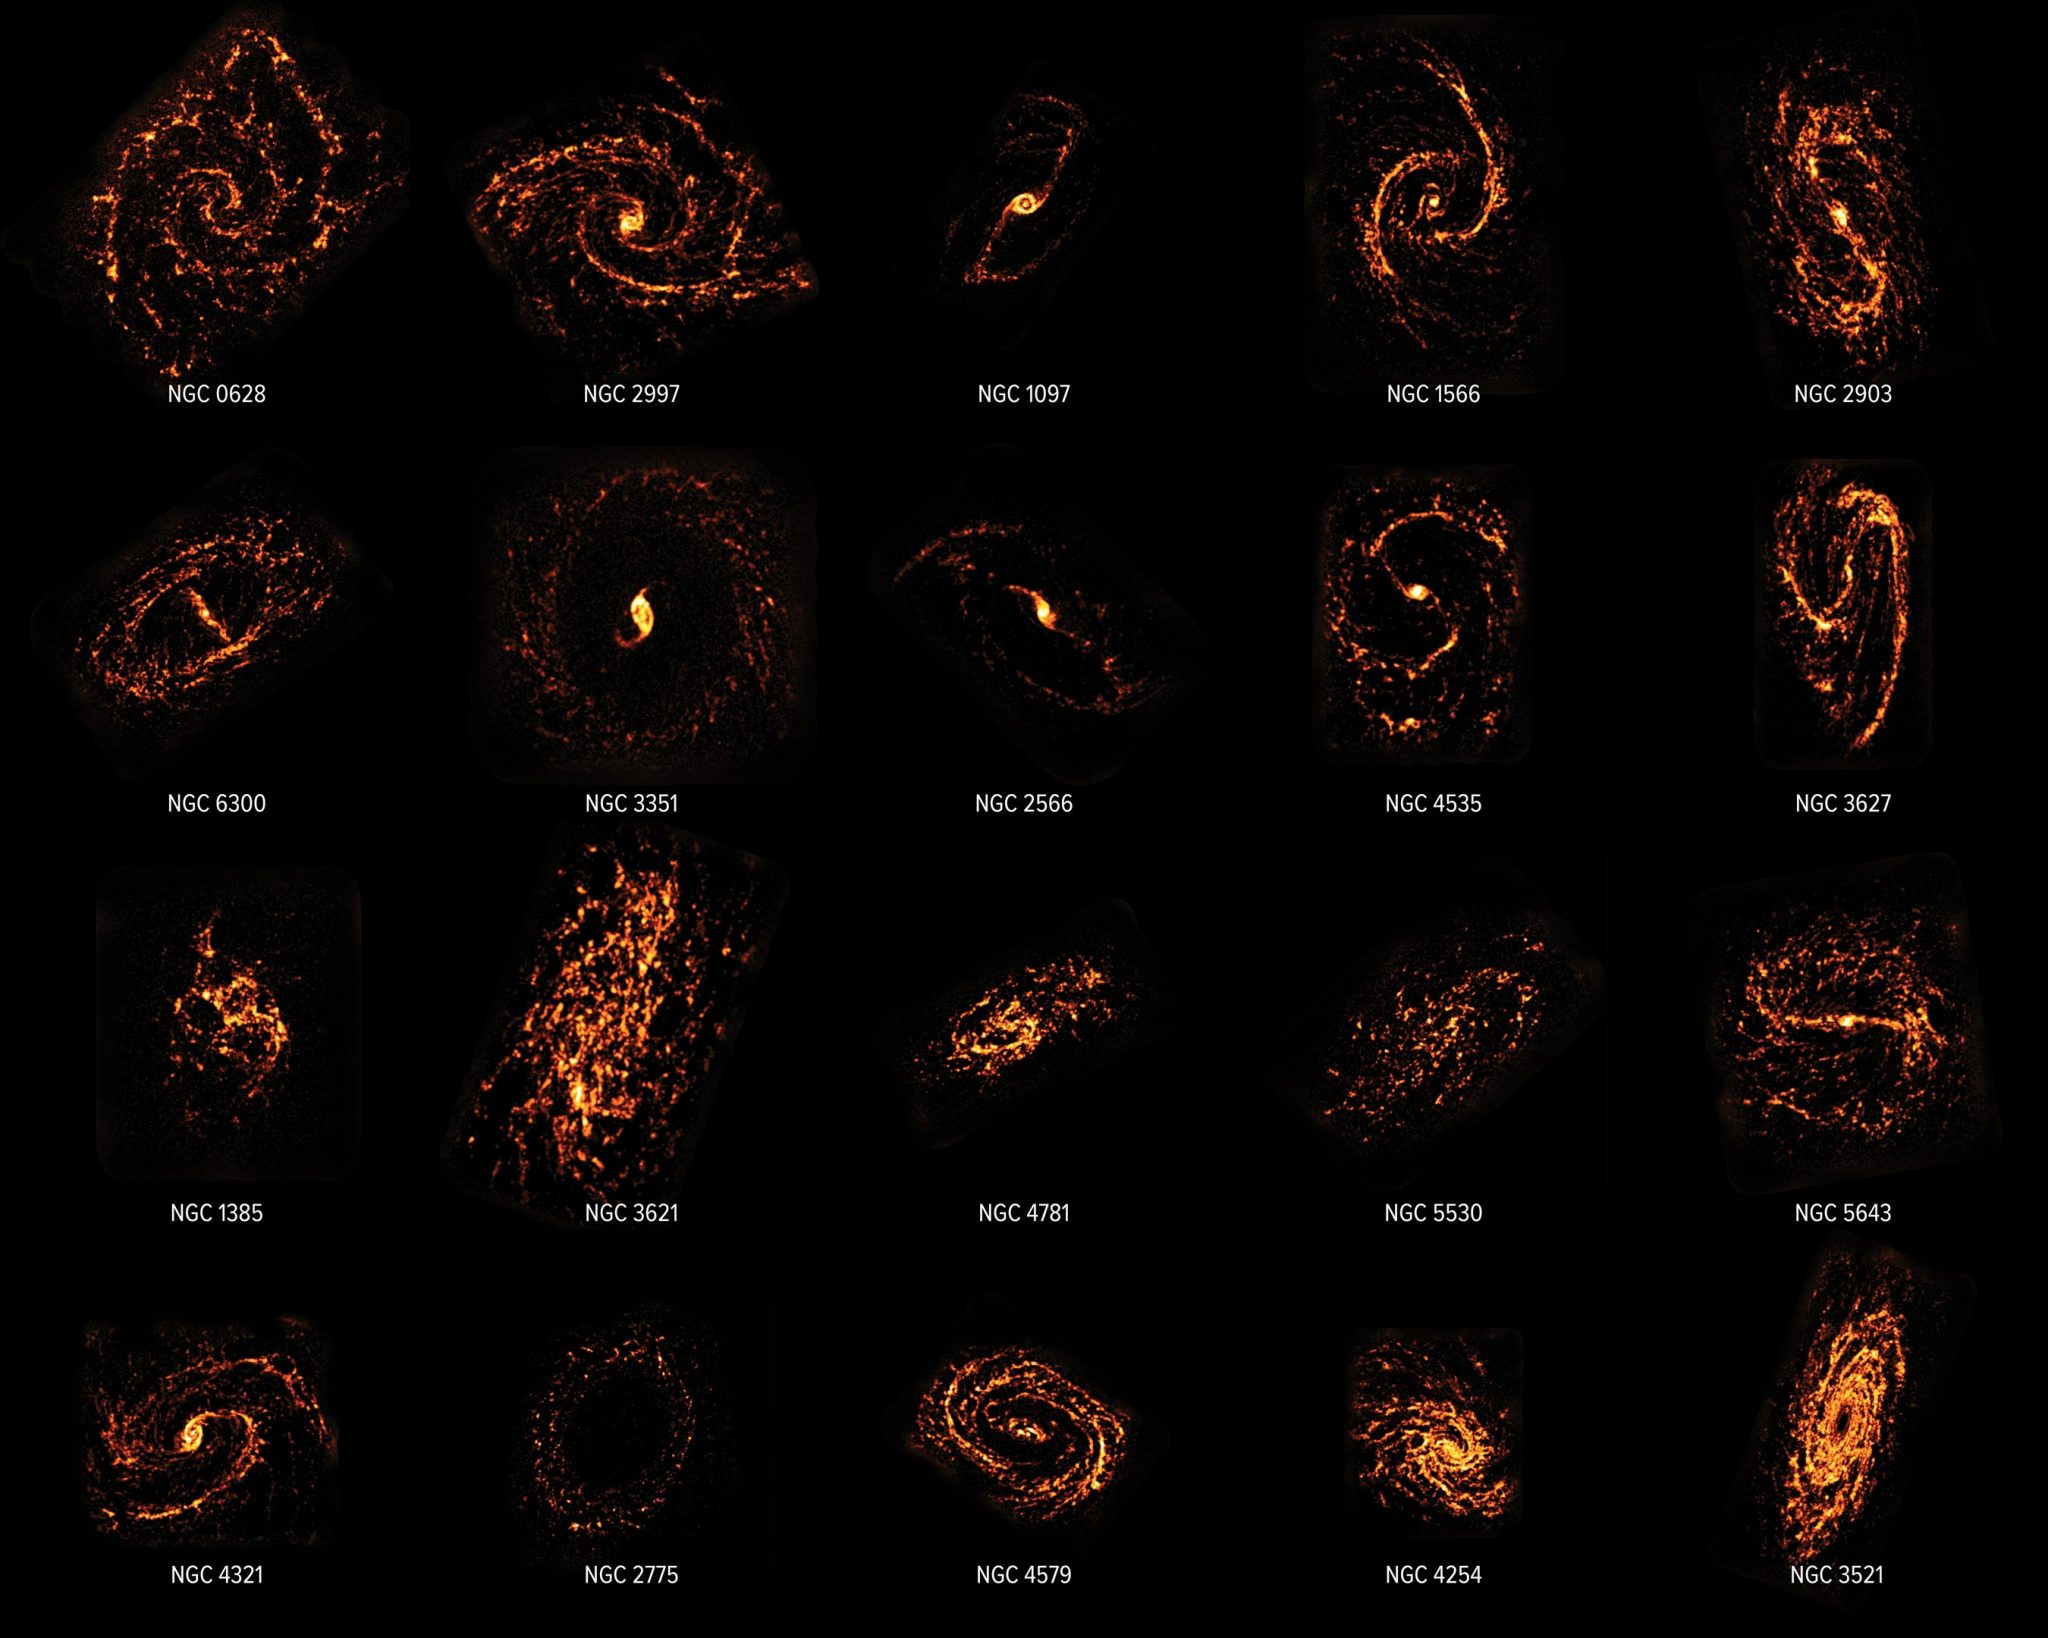 绘制了90多个附近星系中的10万多个“恒星托儿所”图表为恒星起源提供新见解